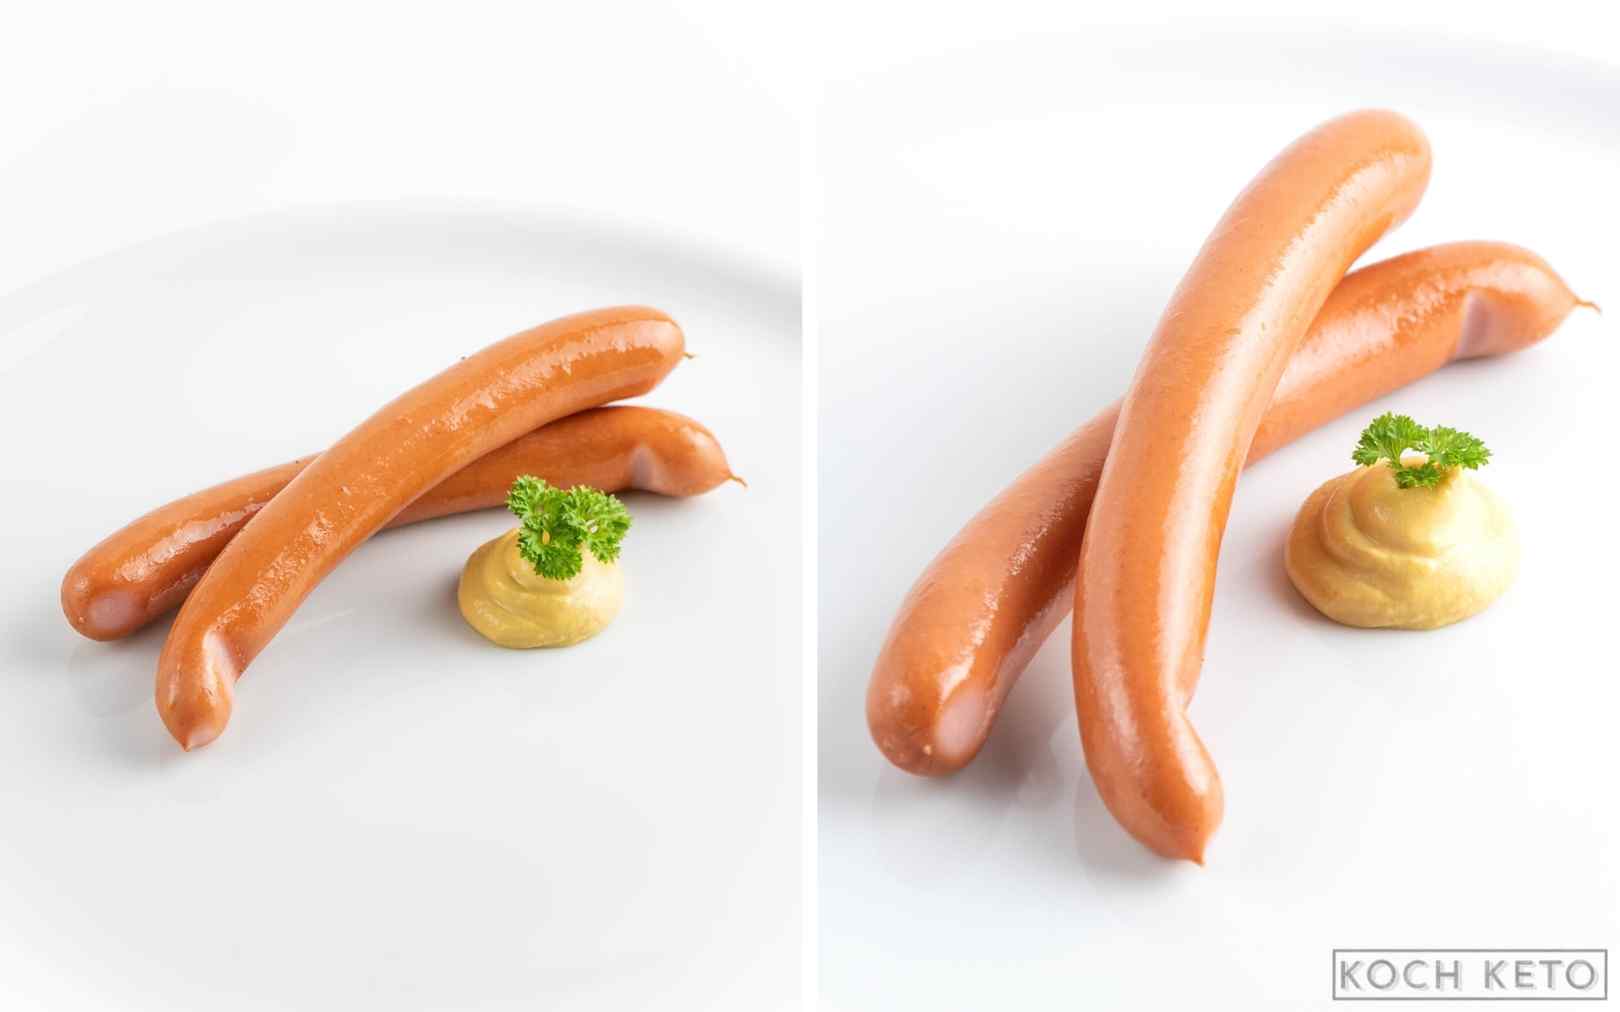 Schneller Low Carb Snack: Wiener Würstchen mit Senf ohne Kohlenhydrate Desktop Image Collage